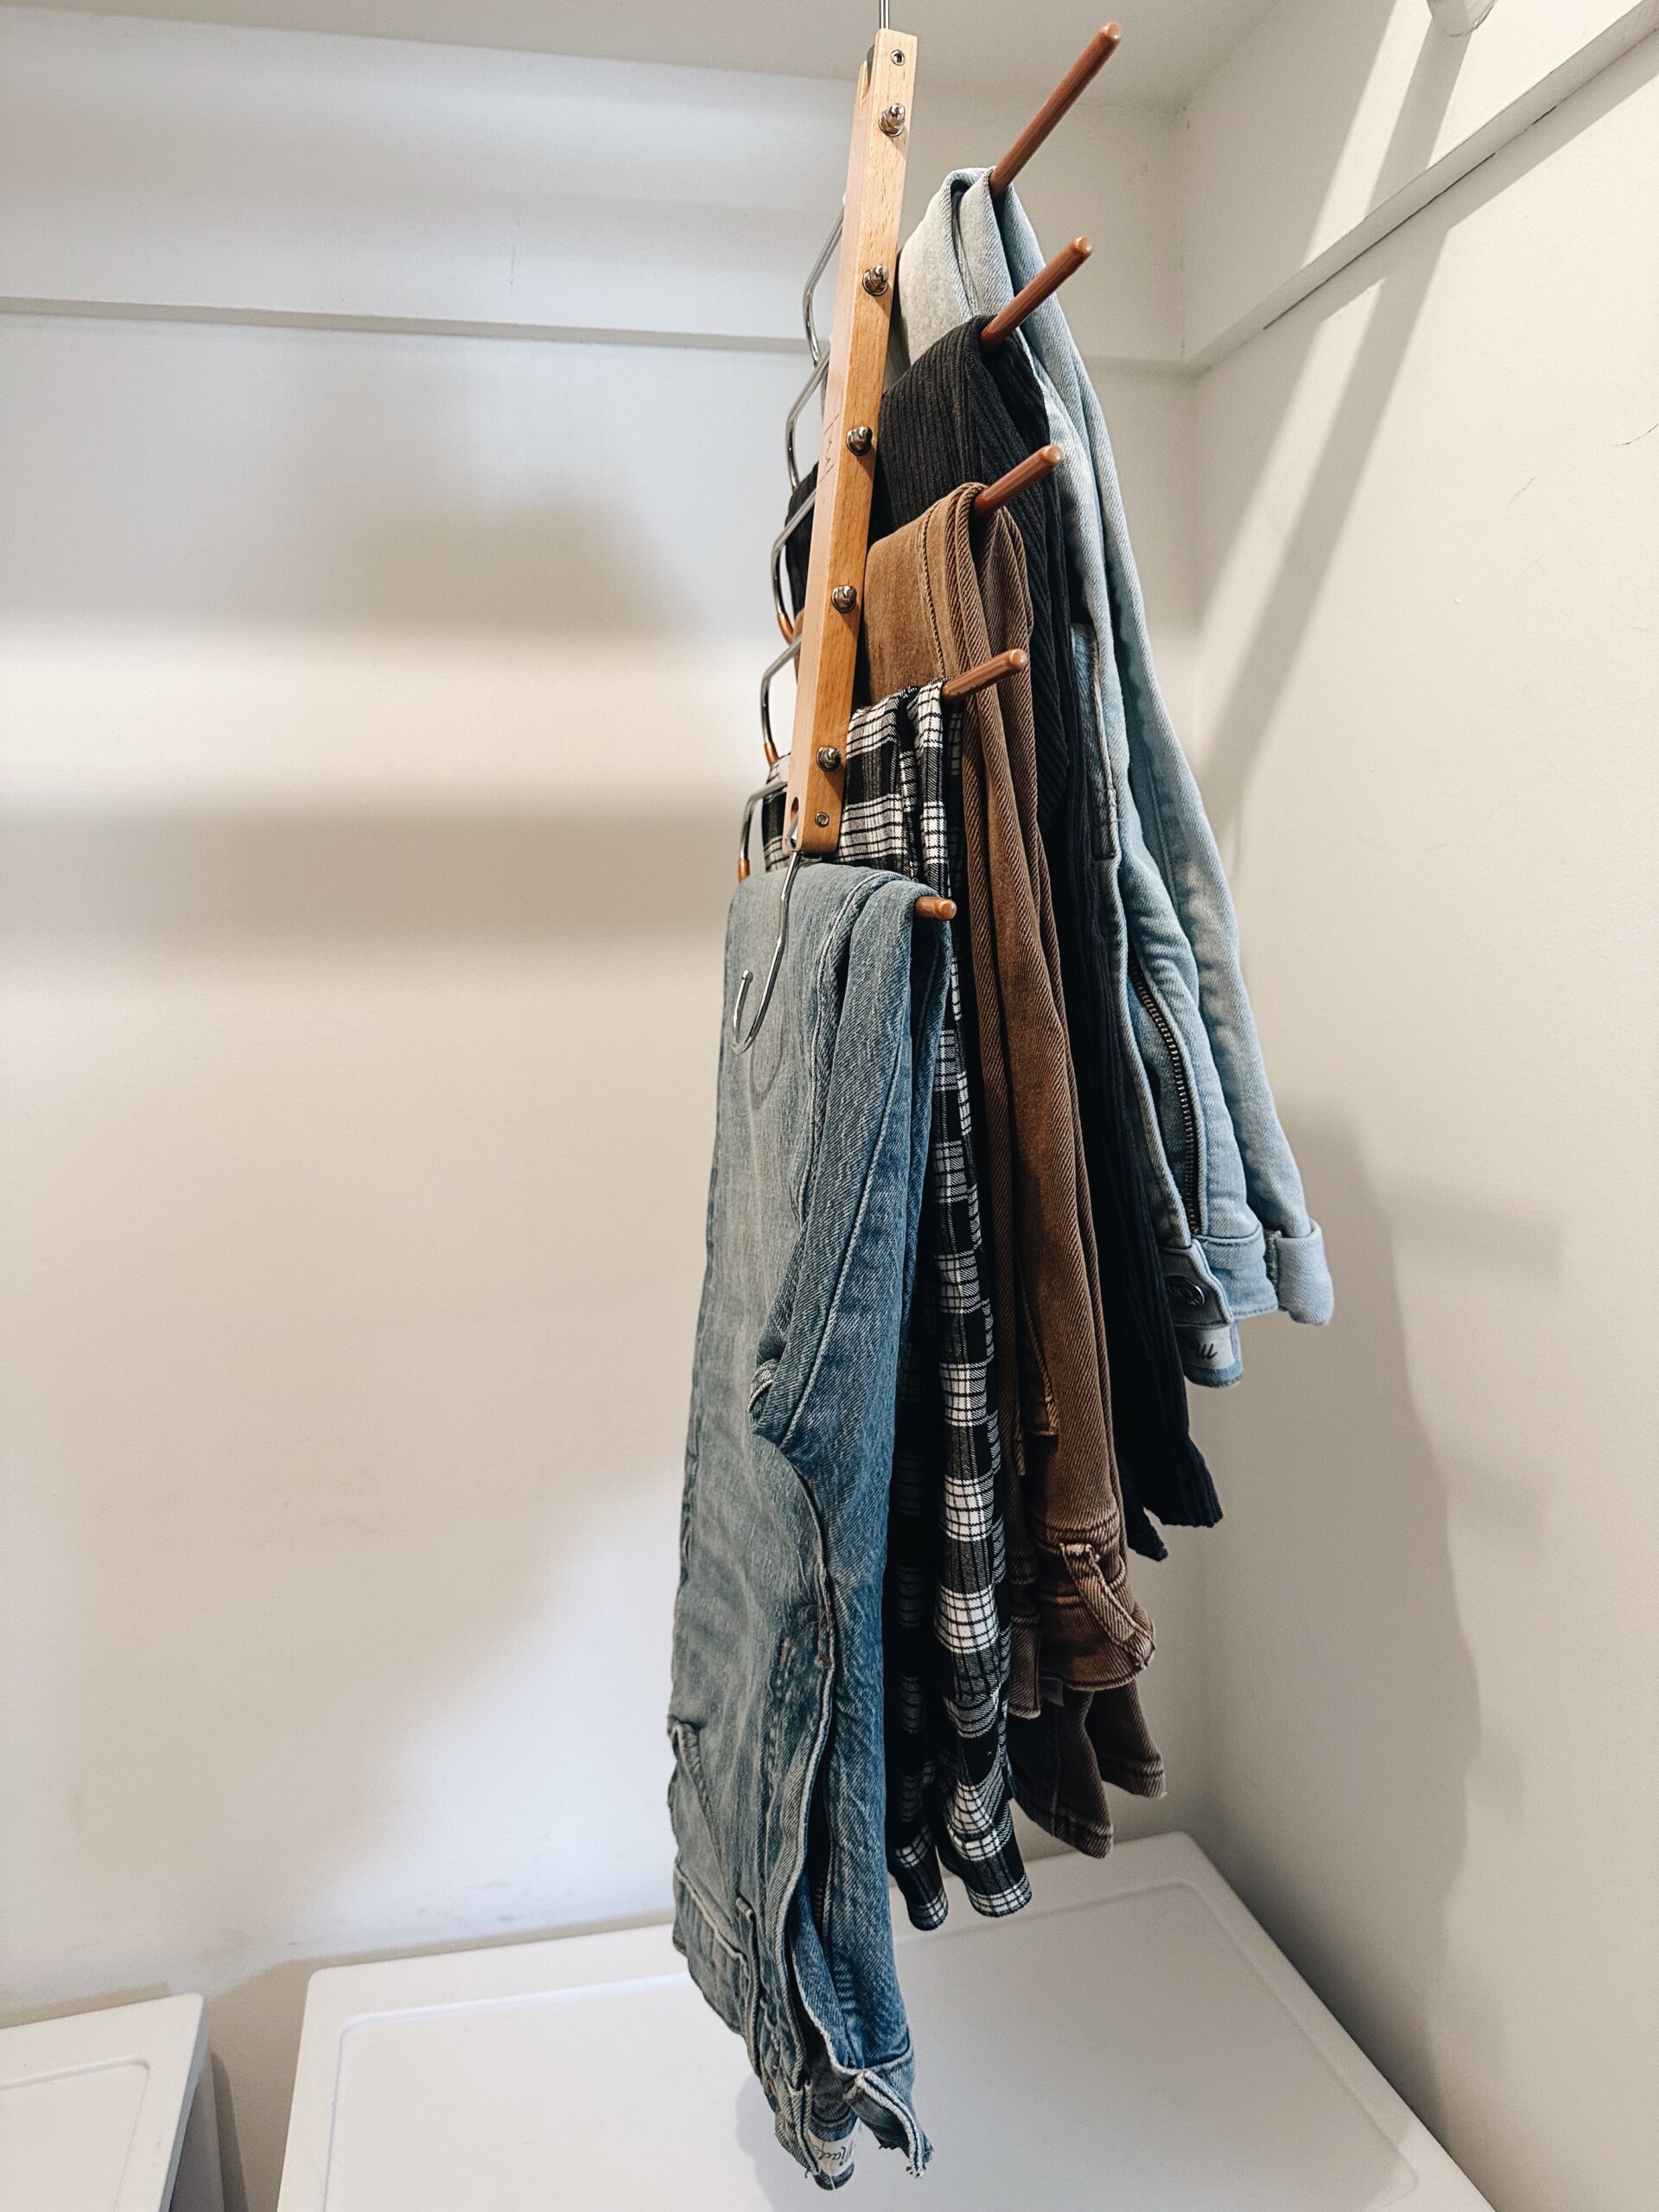 Amazon Pants Hanger